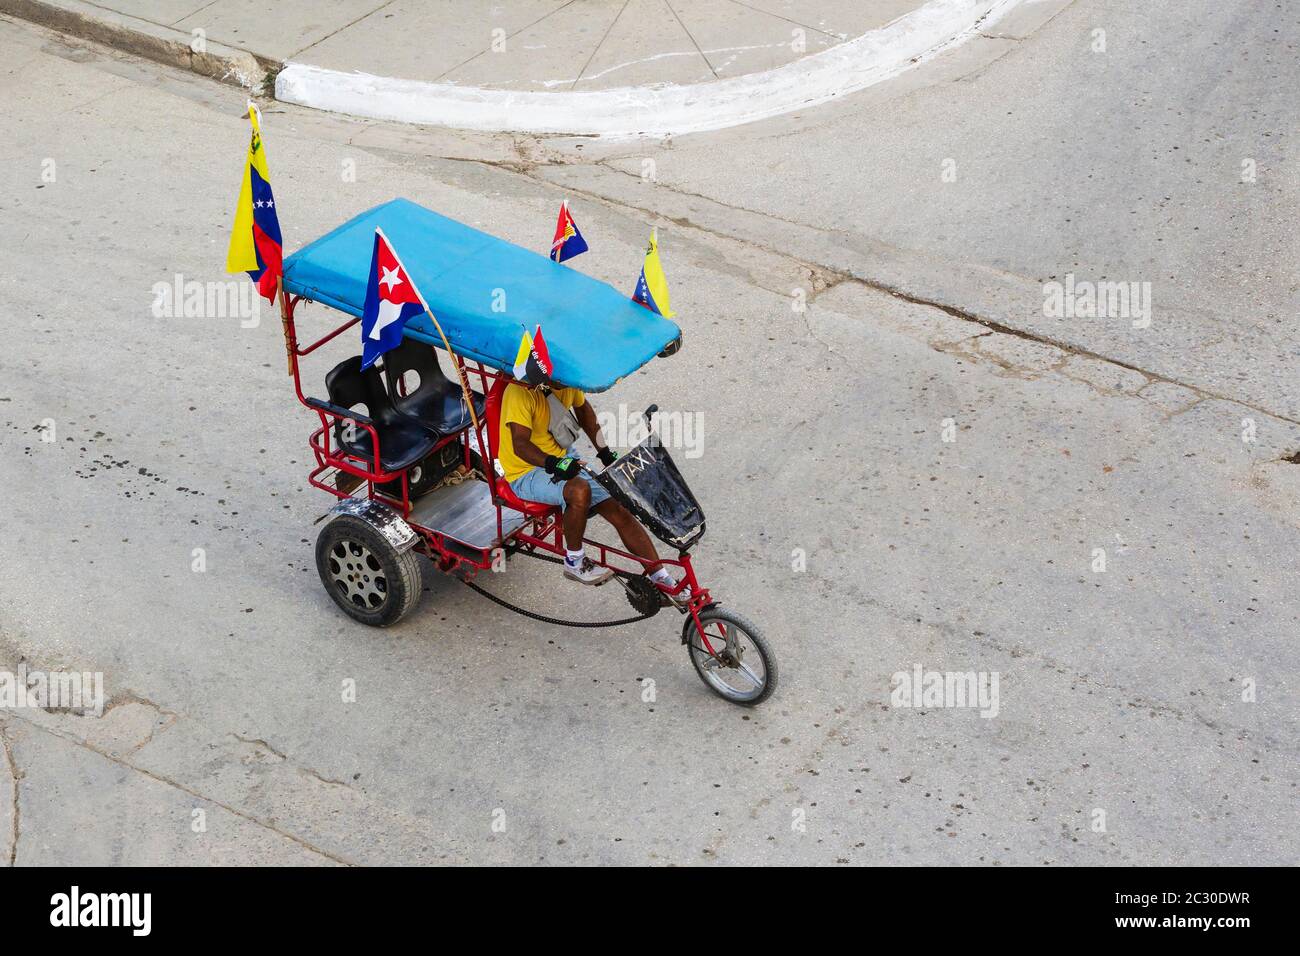 Bicycle taxi, Niquero, Cuba Stock Photo